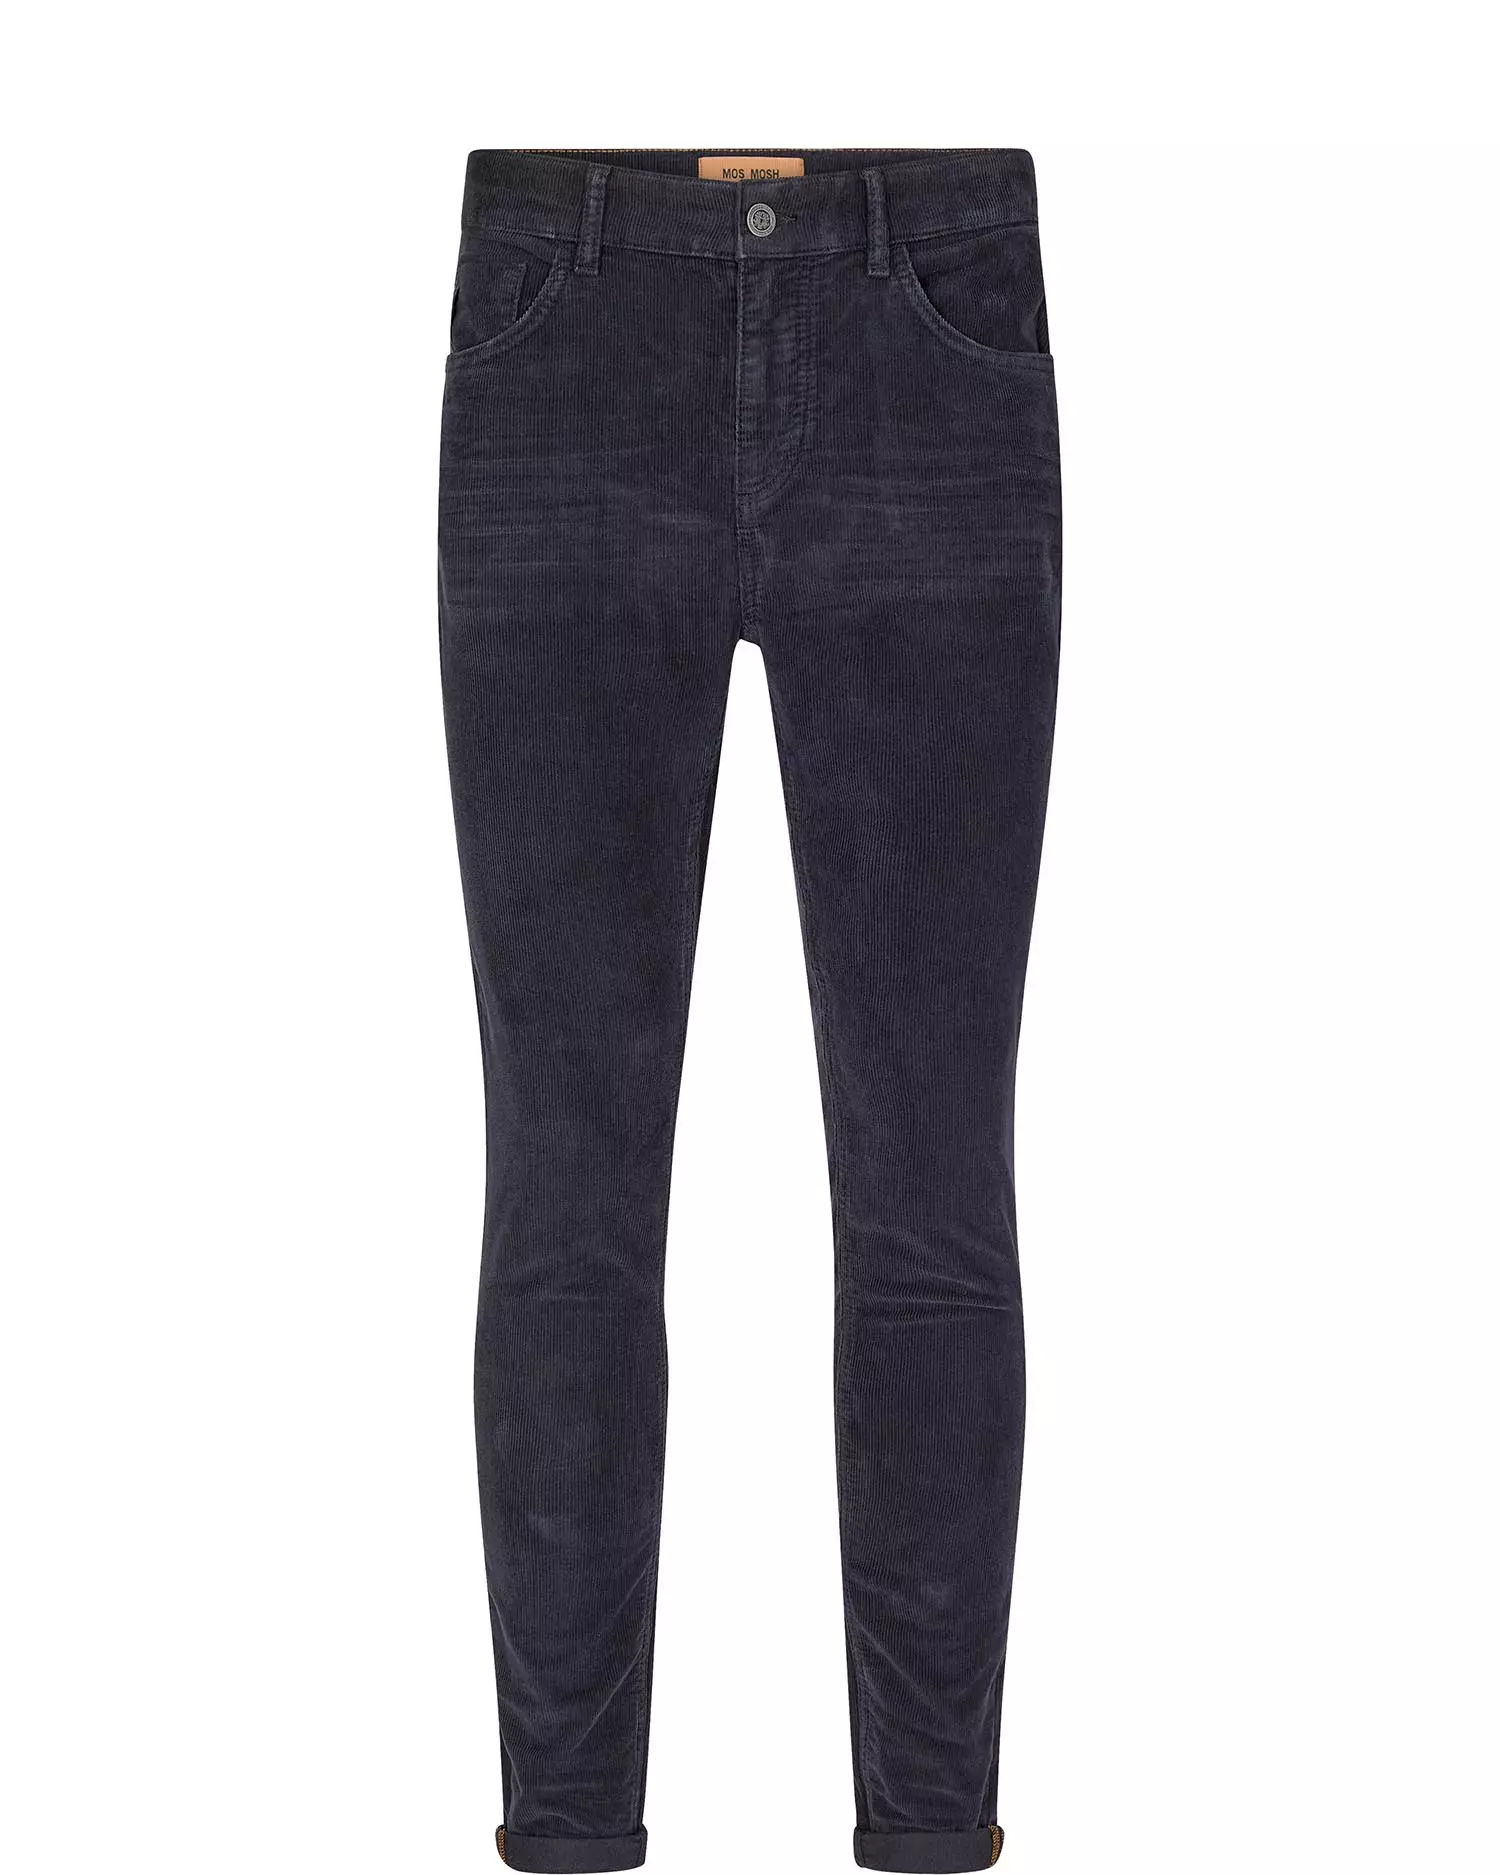 Jeans mit Portman-Streifen 